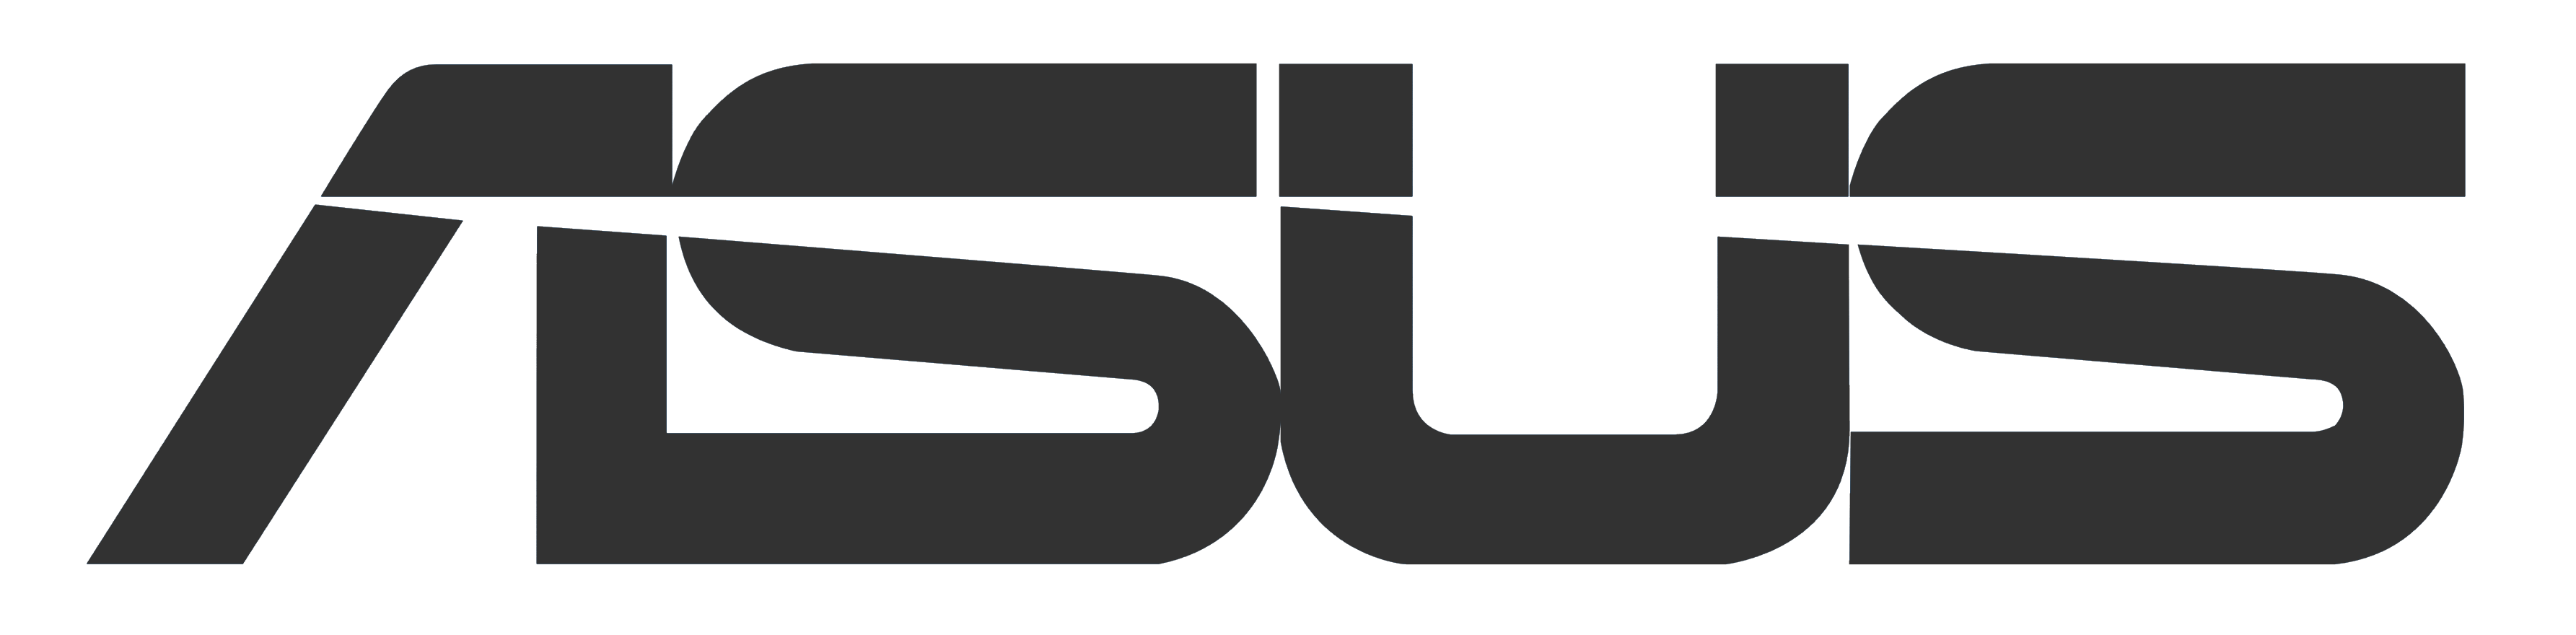 Asus Laptop Repair Logo 